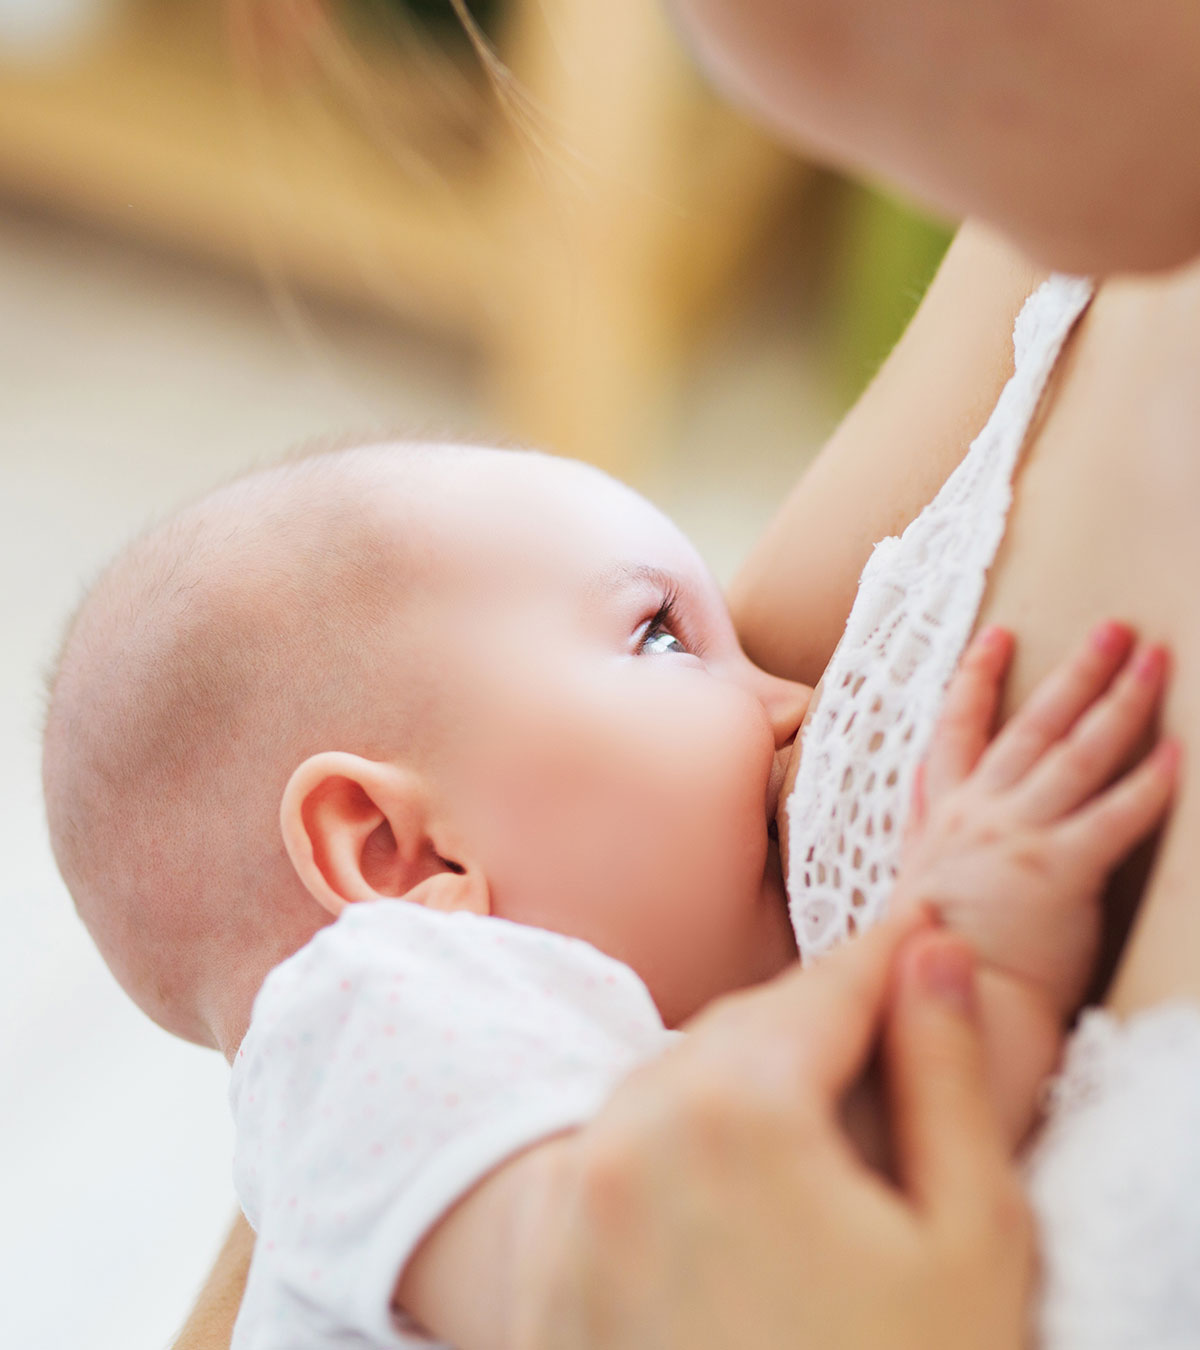 母乳喂养引起的乳头疼痛:原因和治疗